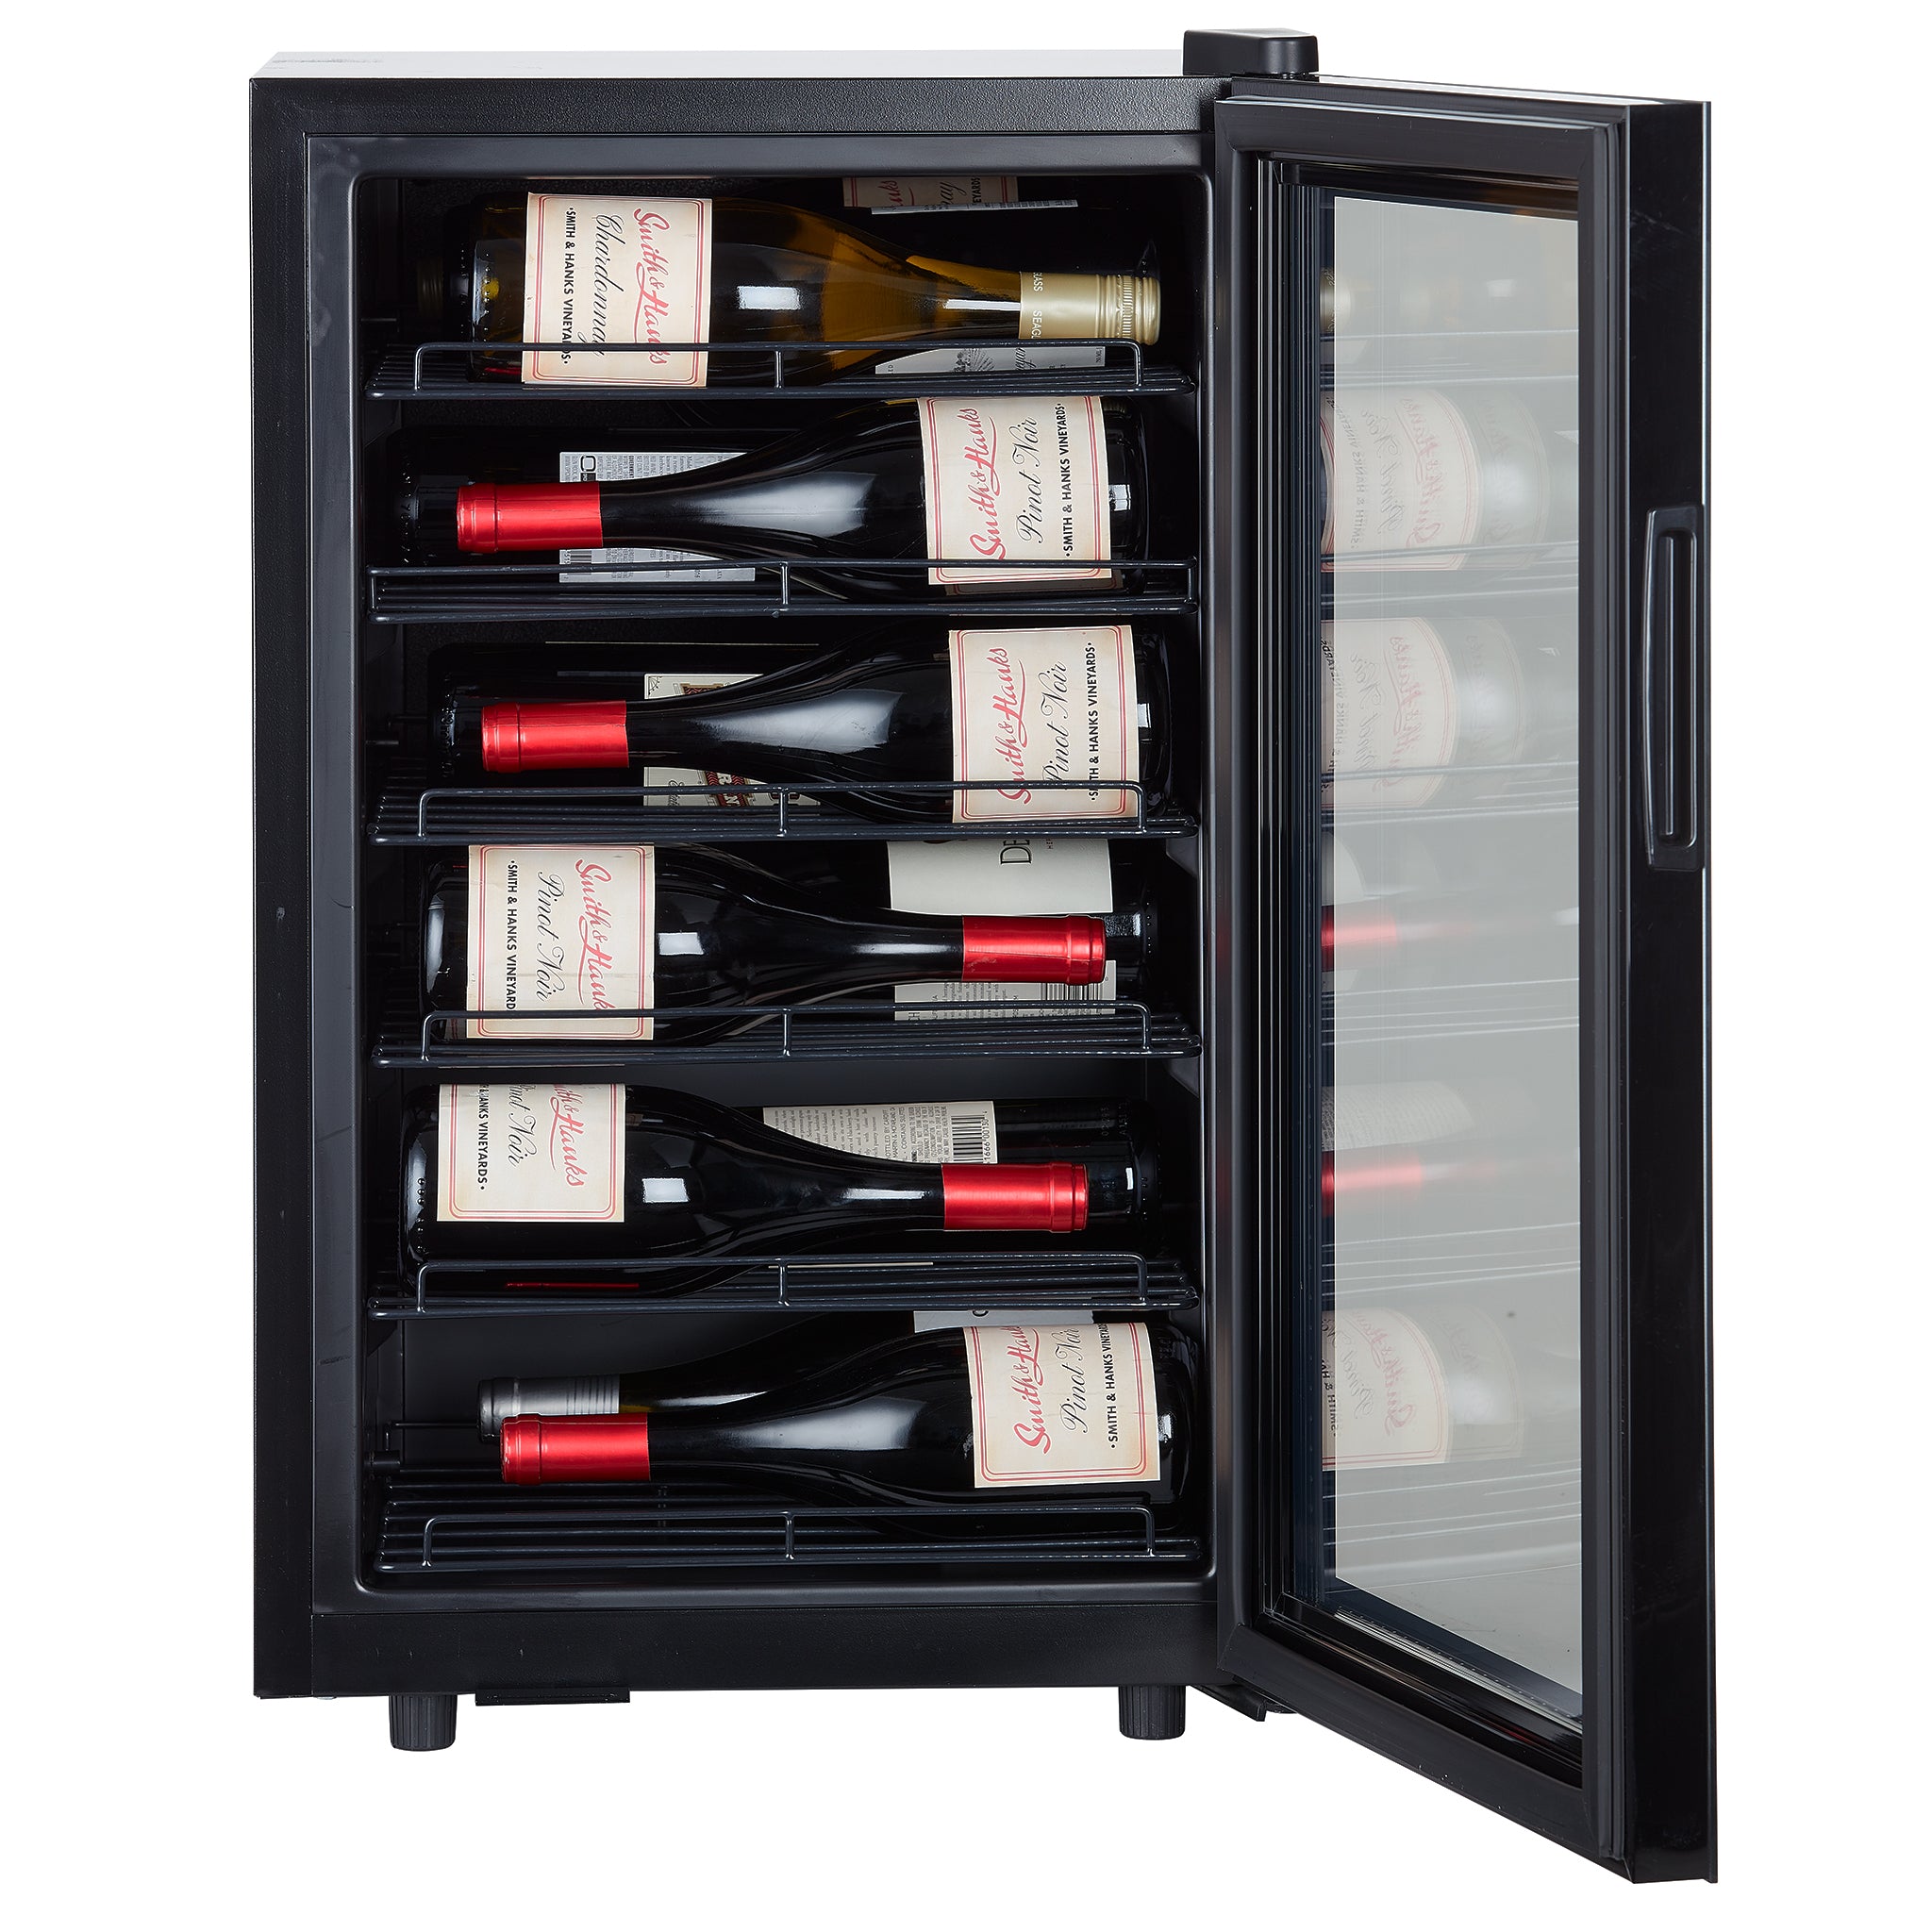 Smith & Hanks - 18" 22 Bottle Freestanding Countertop Wine Cooler (RE100070)